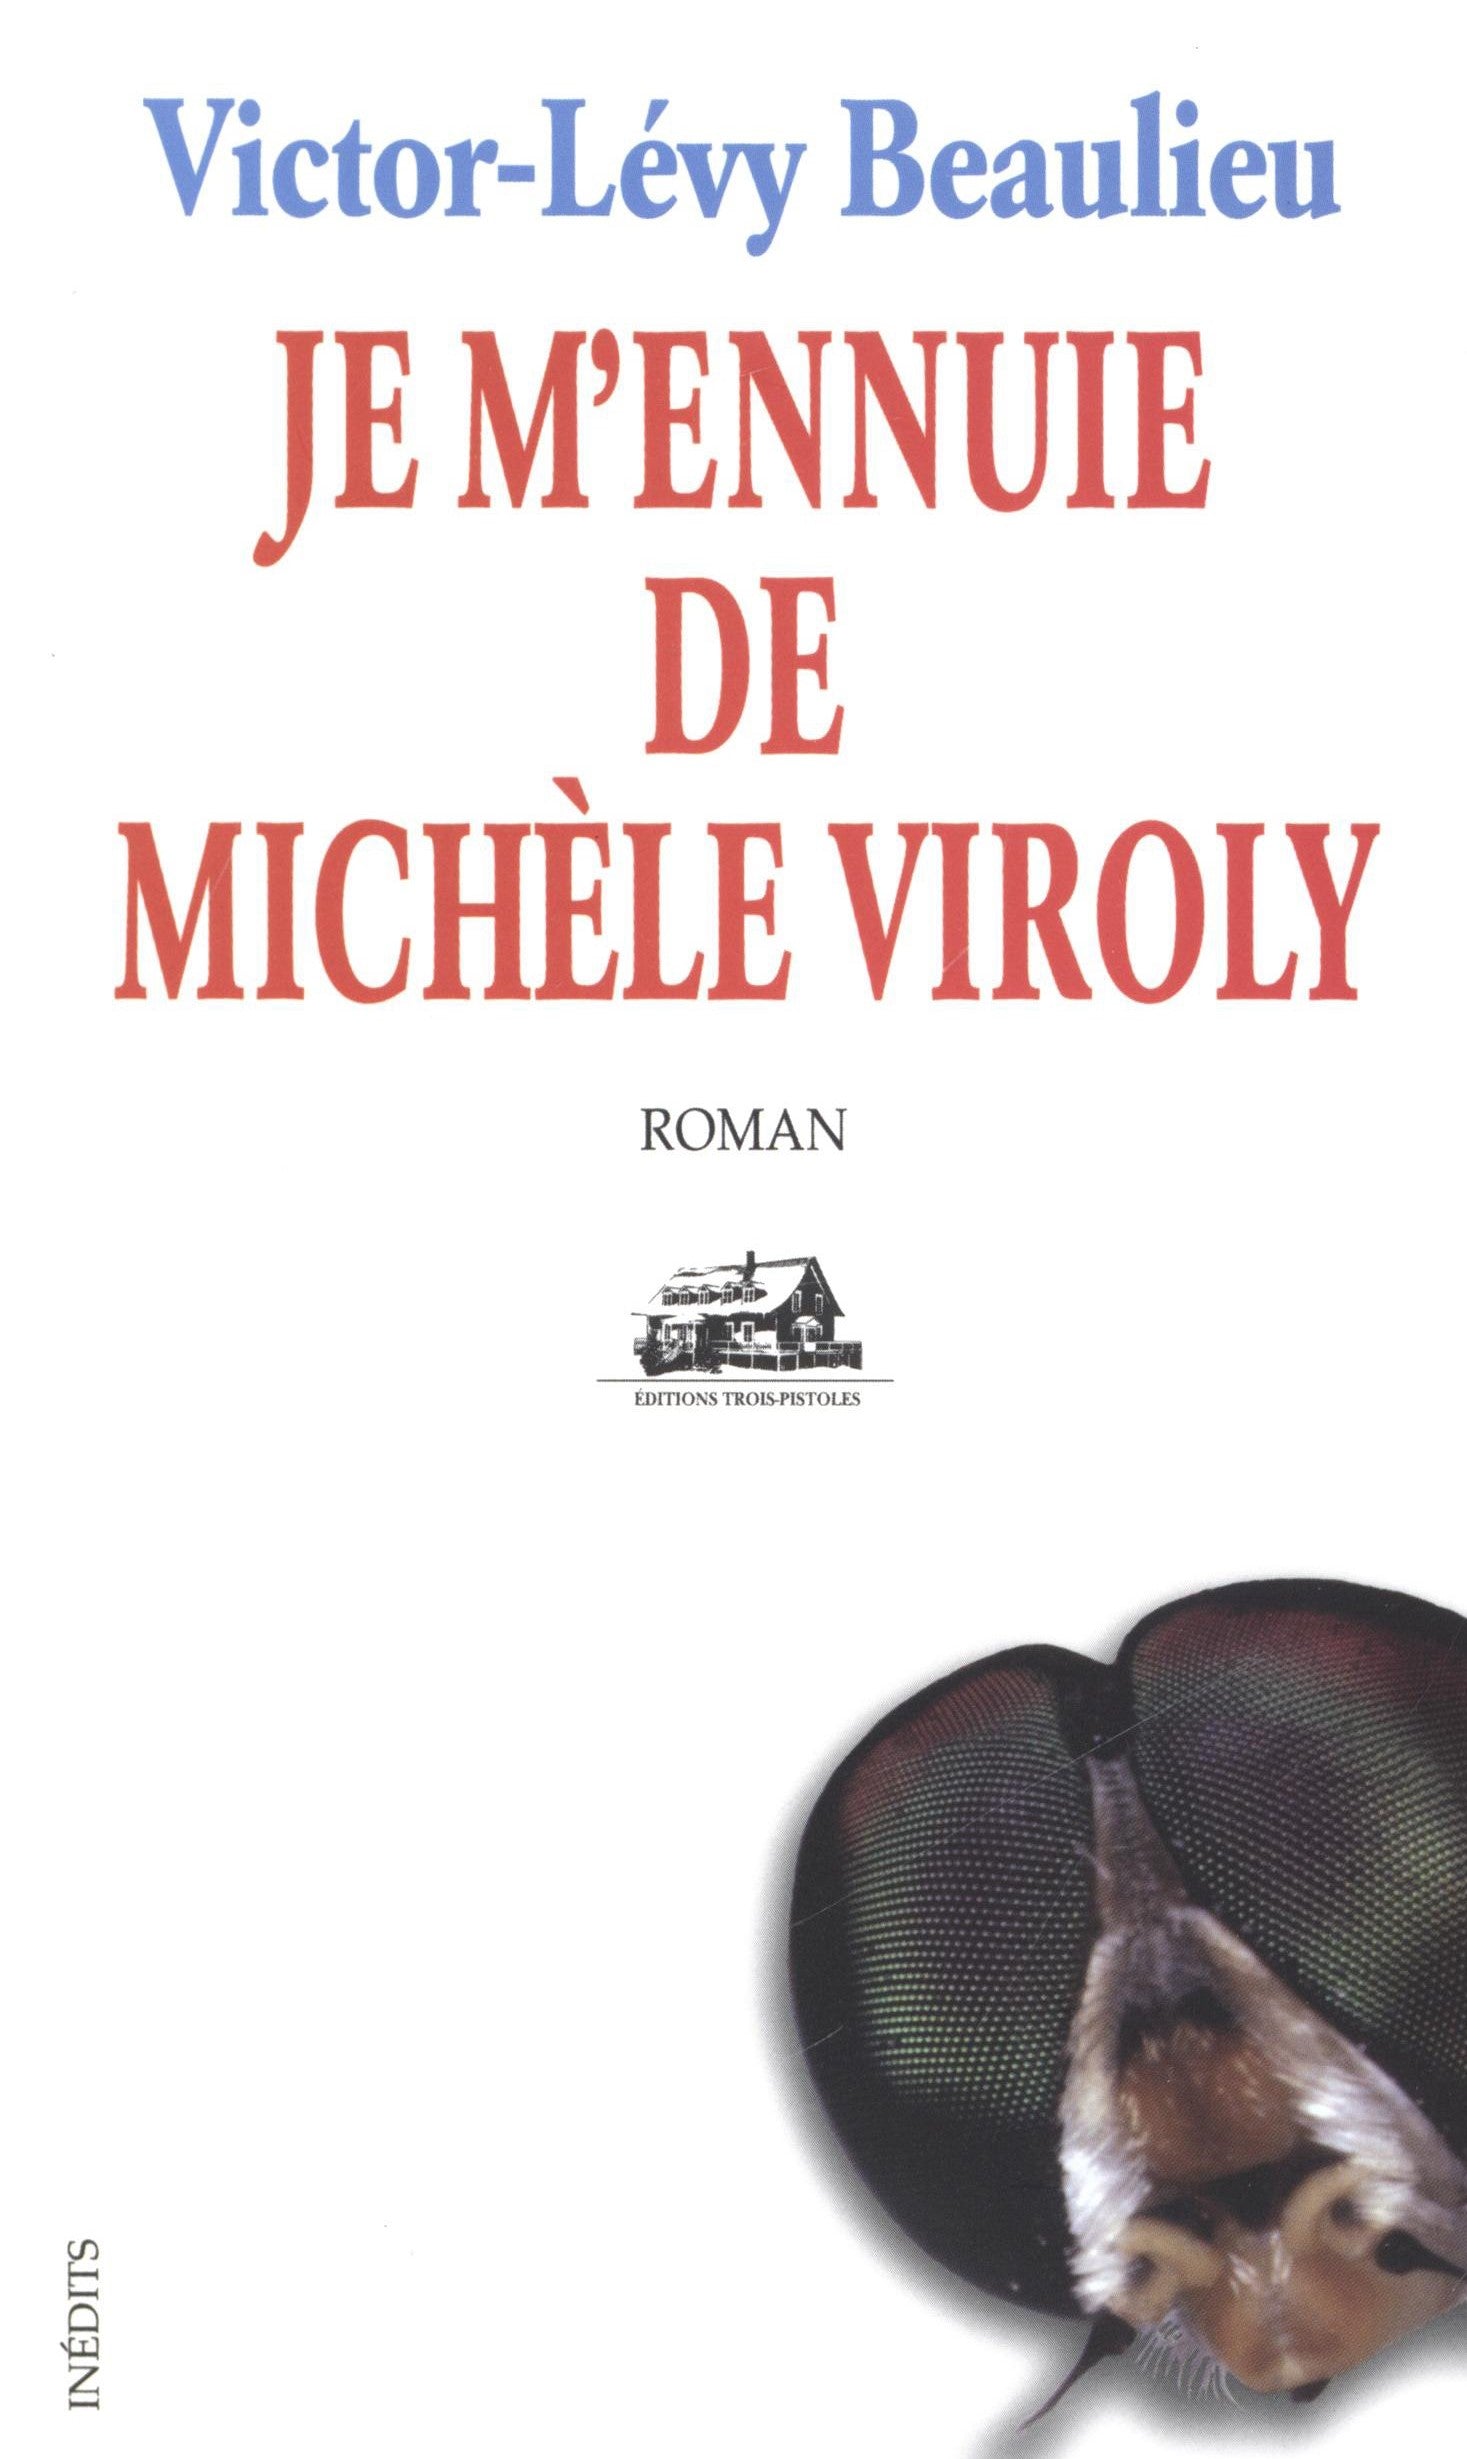 Livre ISBN 2895830975 Je m'ennuie de Michèle Viroly (Victor-Lévy Beaulieu)